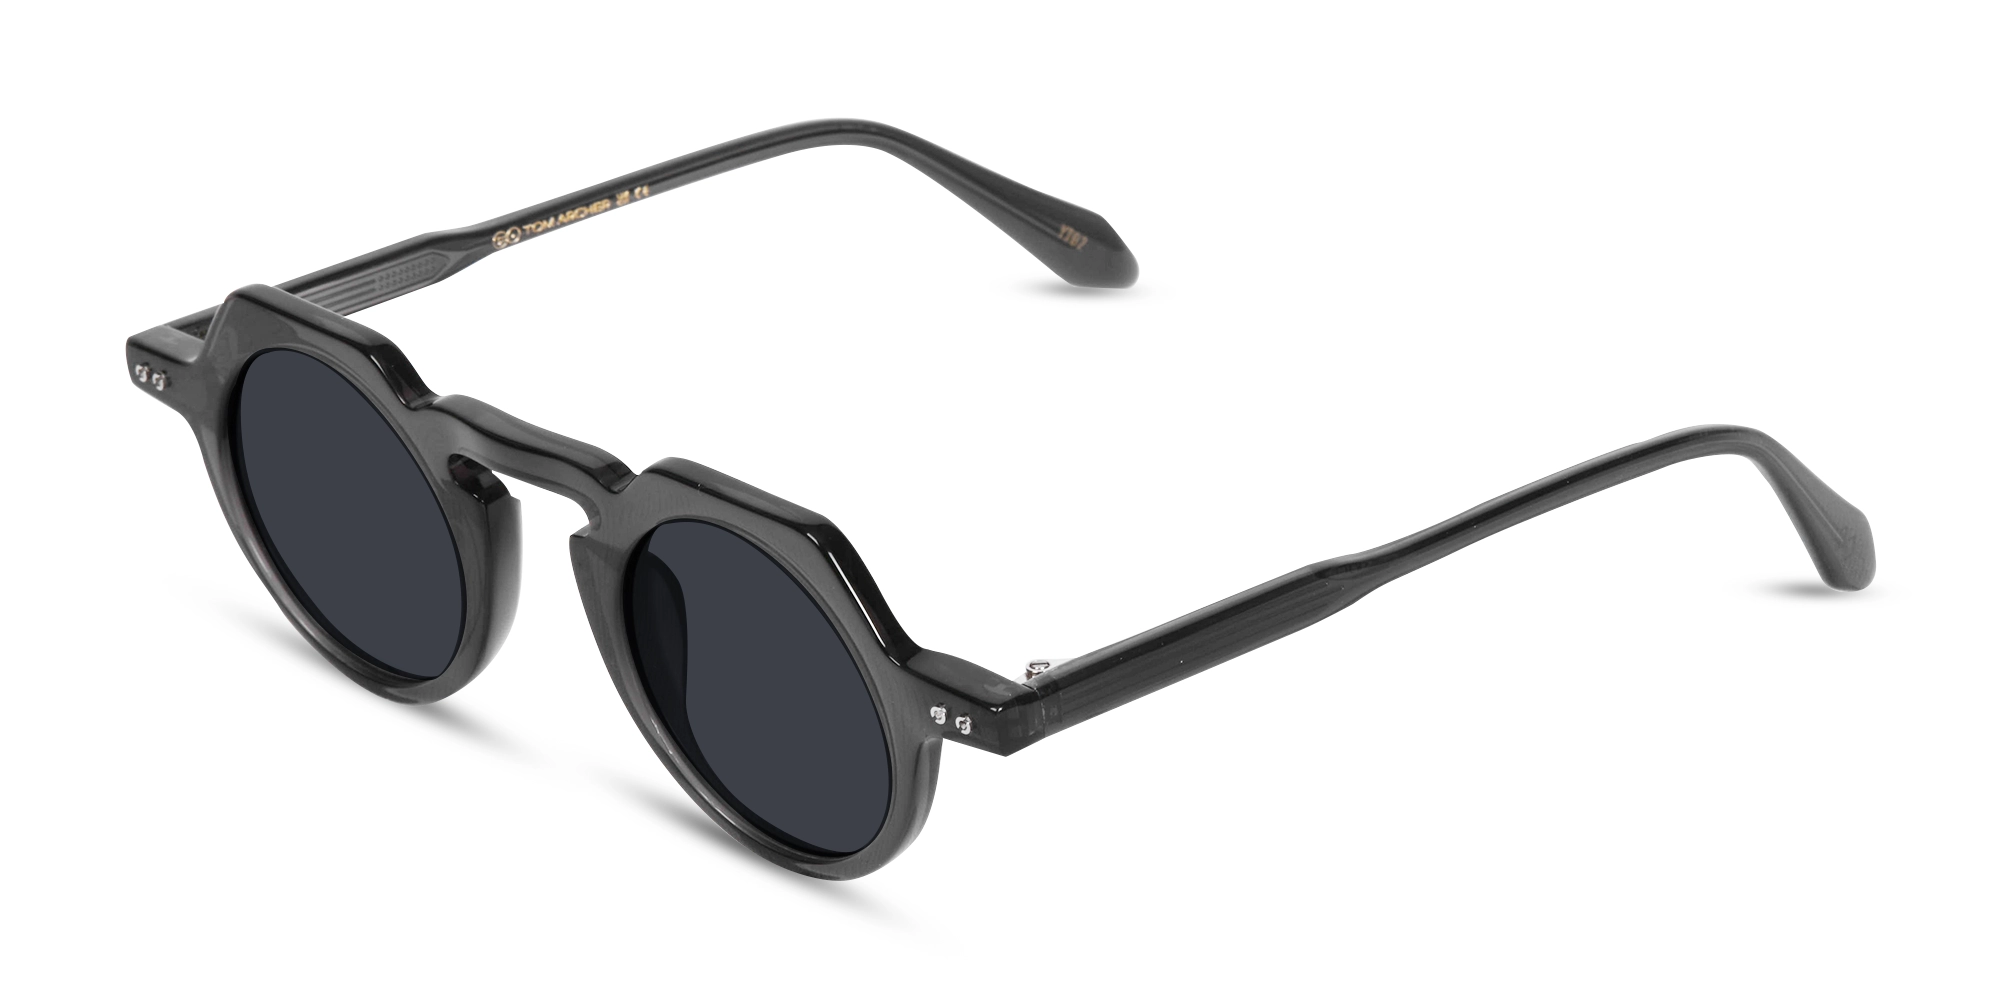 Grey Frame Sunglasses